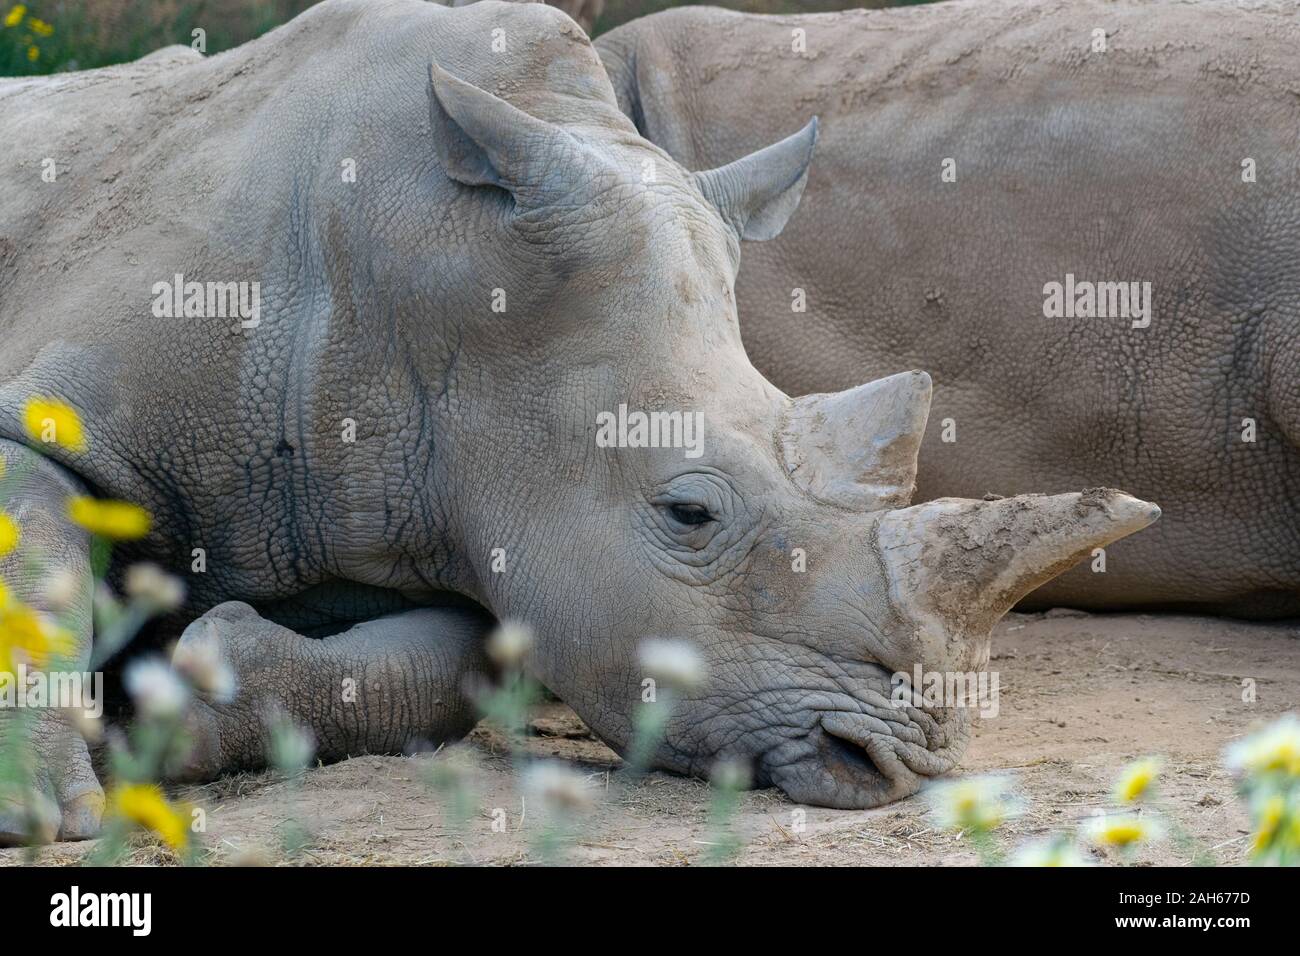 Rinoceronte bianco (Ceratotherium simum) close up shot, posa sulla terra Foto Stock